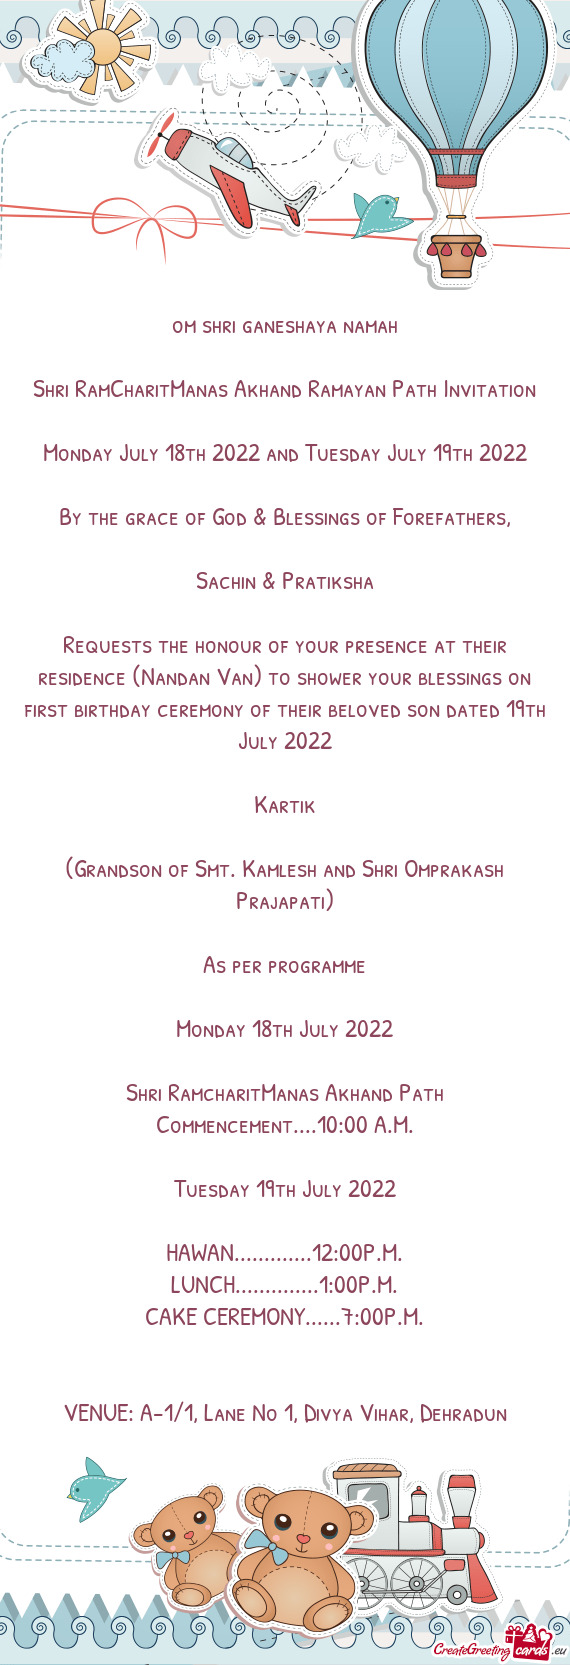 Sachin & Pratiksha